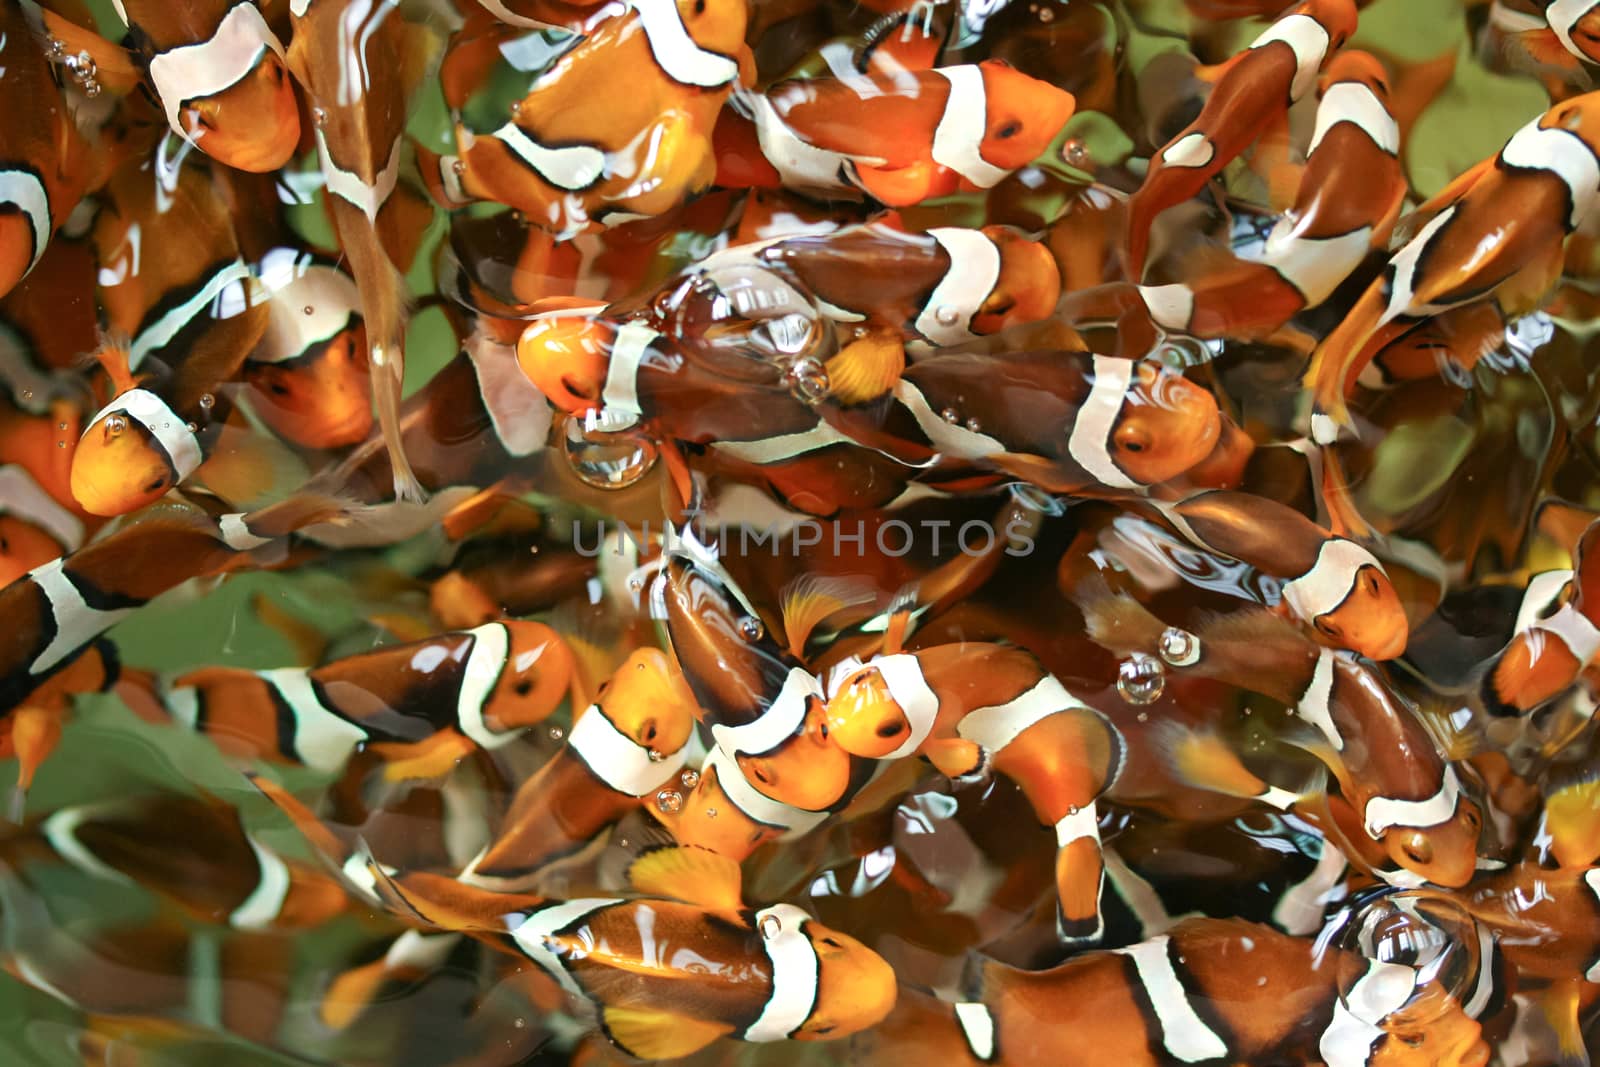 anemone fish,clown fish,nemo